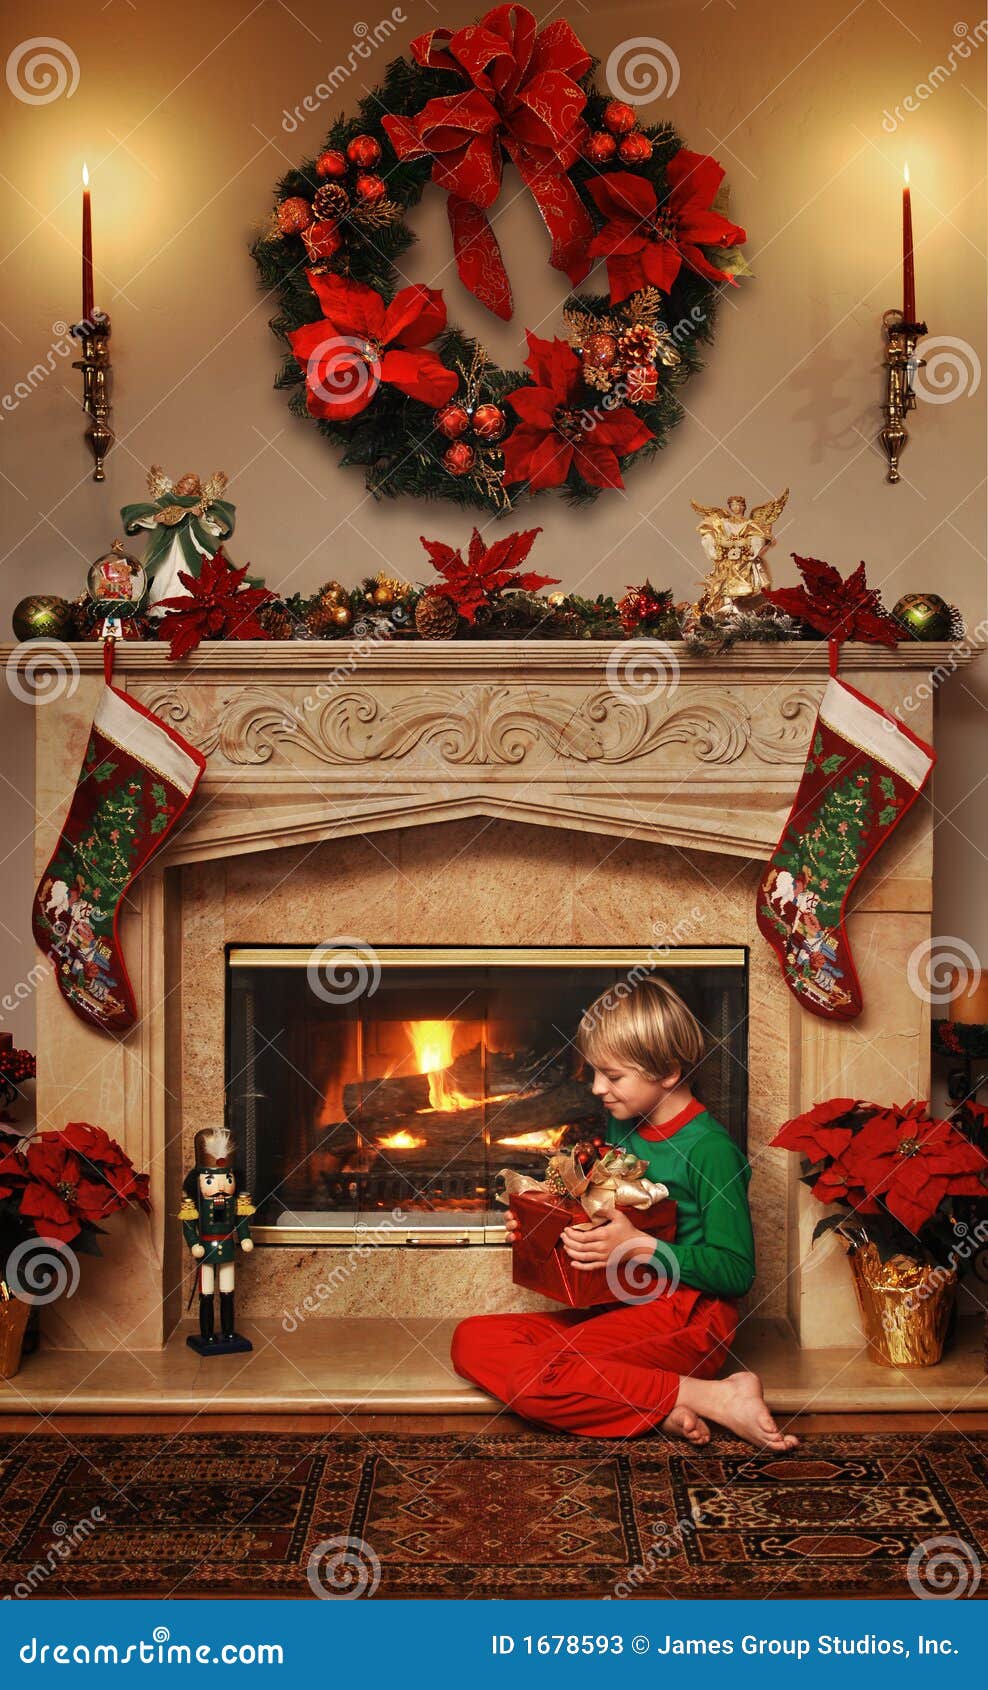 Il Mio Regalo Di Natale.Il Mio Regalo Di Natale Immagine Stock Immagine Di Poinsettia 1678593